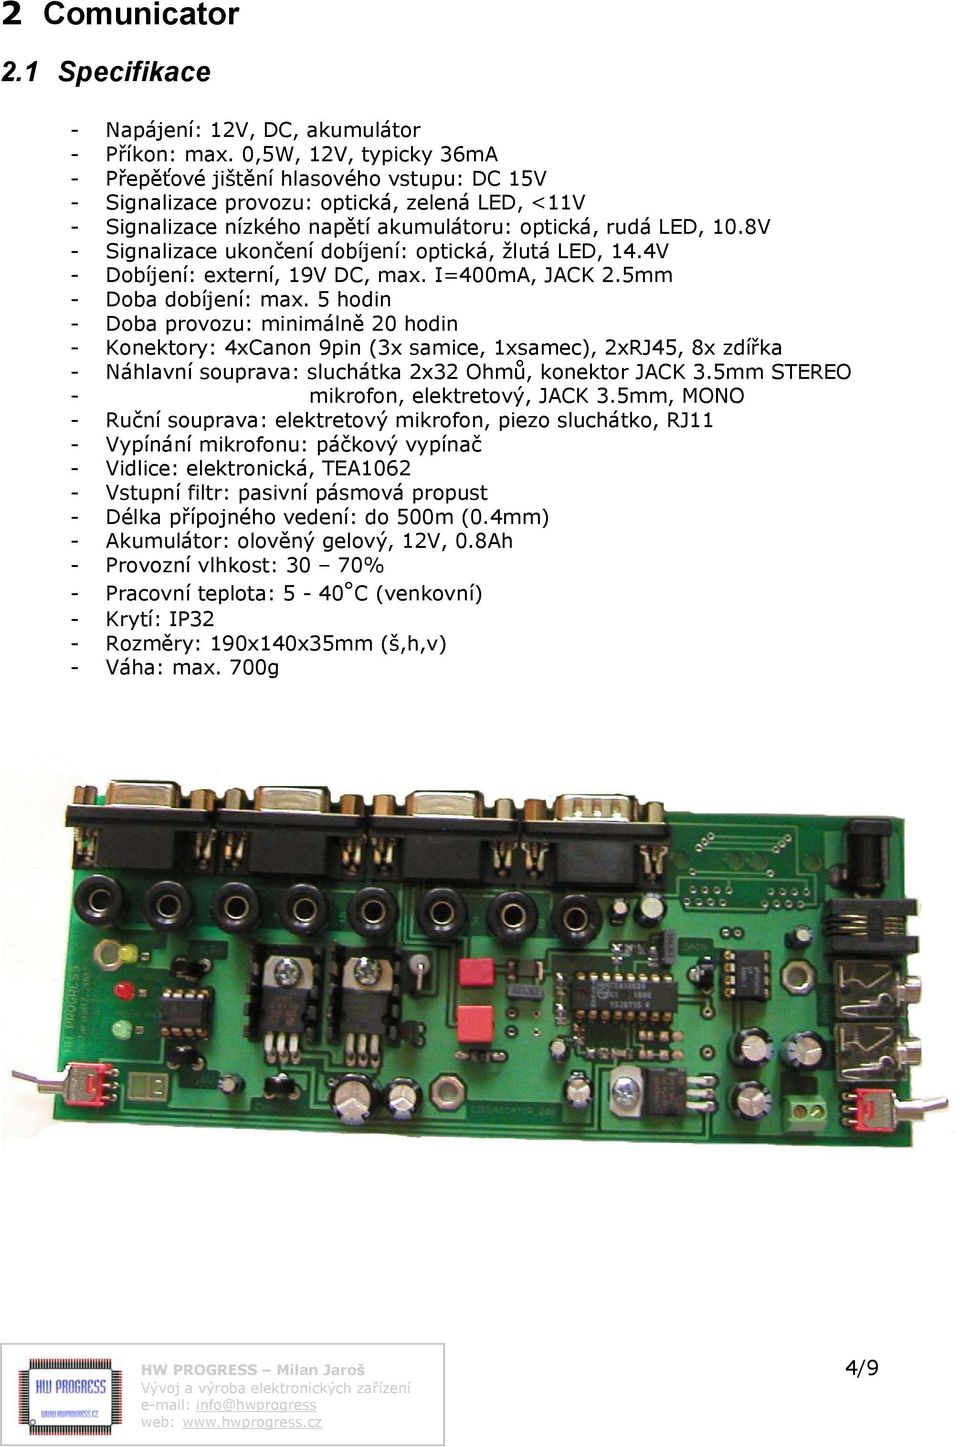 8V - Signalizace ukončení dobíjení: optická, žlutá LED, 14.4V - Dobíjení: externí, 19V DC, max. I=400mA, JACK 2.5mm - Doba dobíjení: max.